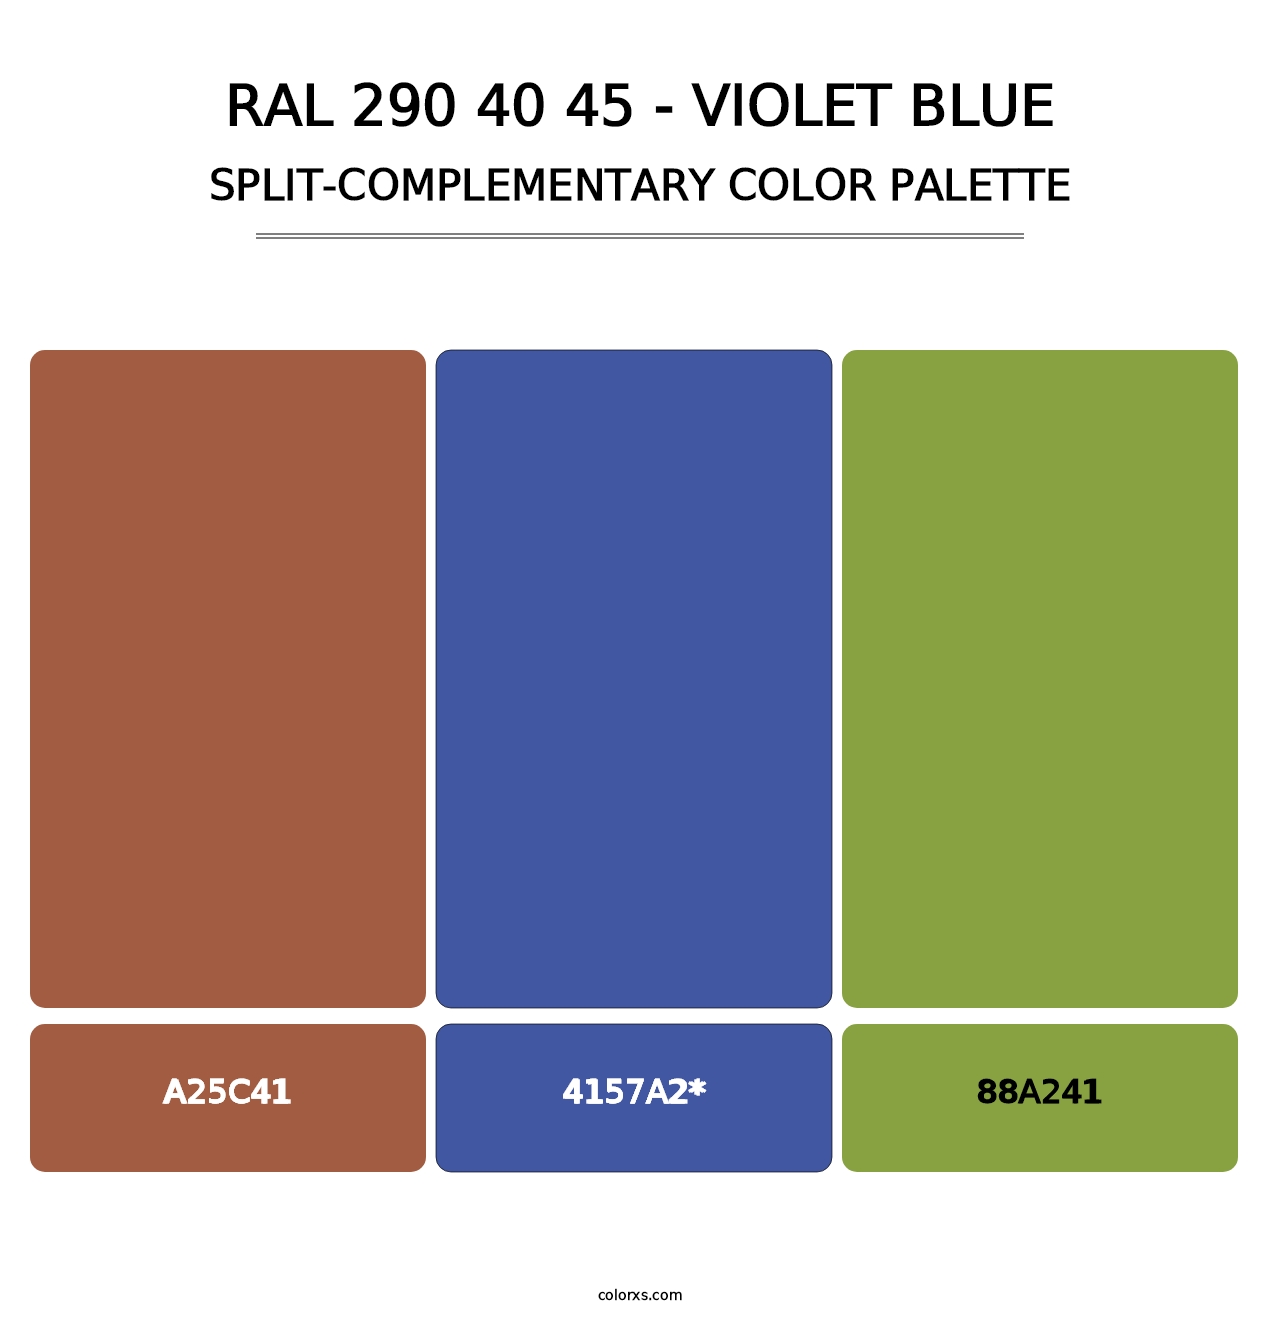 RAL 290 40 45 - Violet Blue - Split-Complementary Color Palette